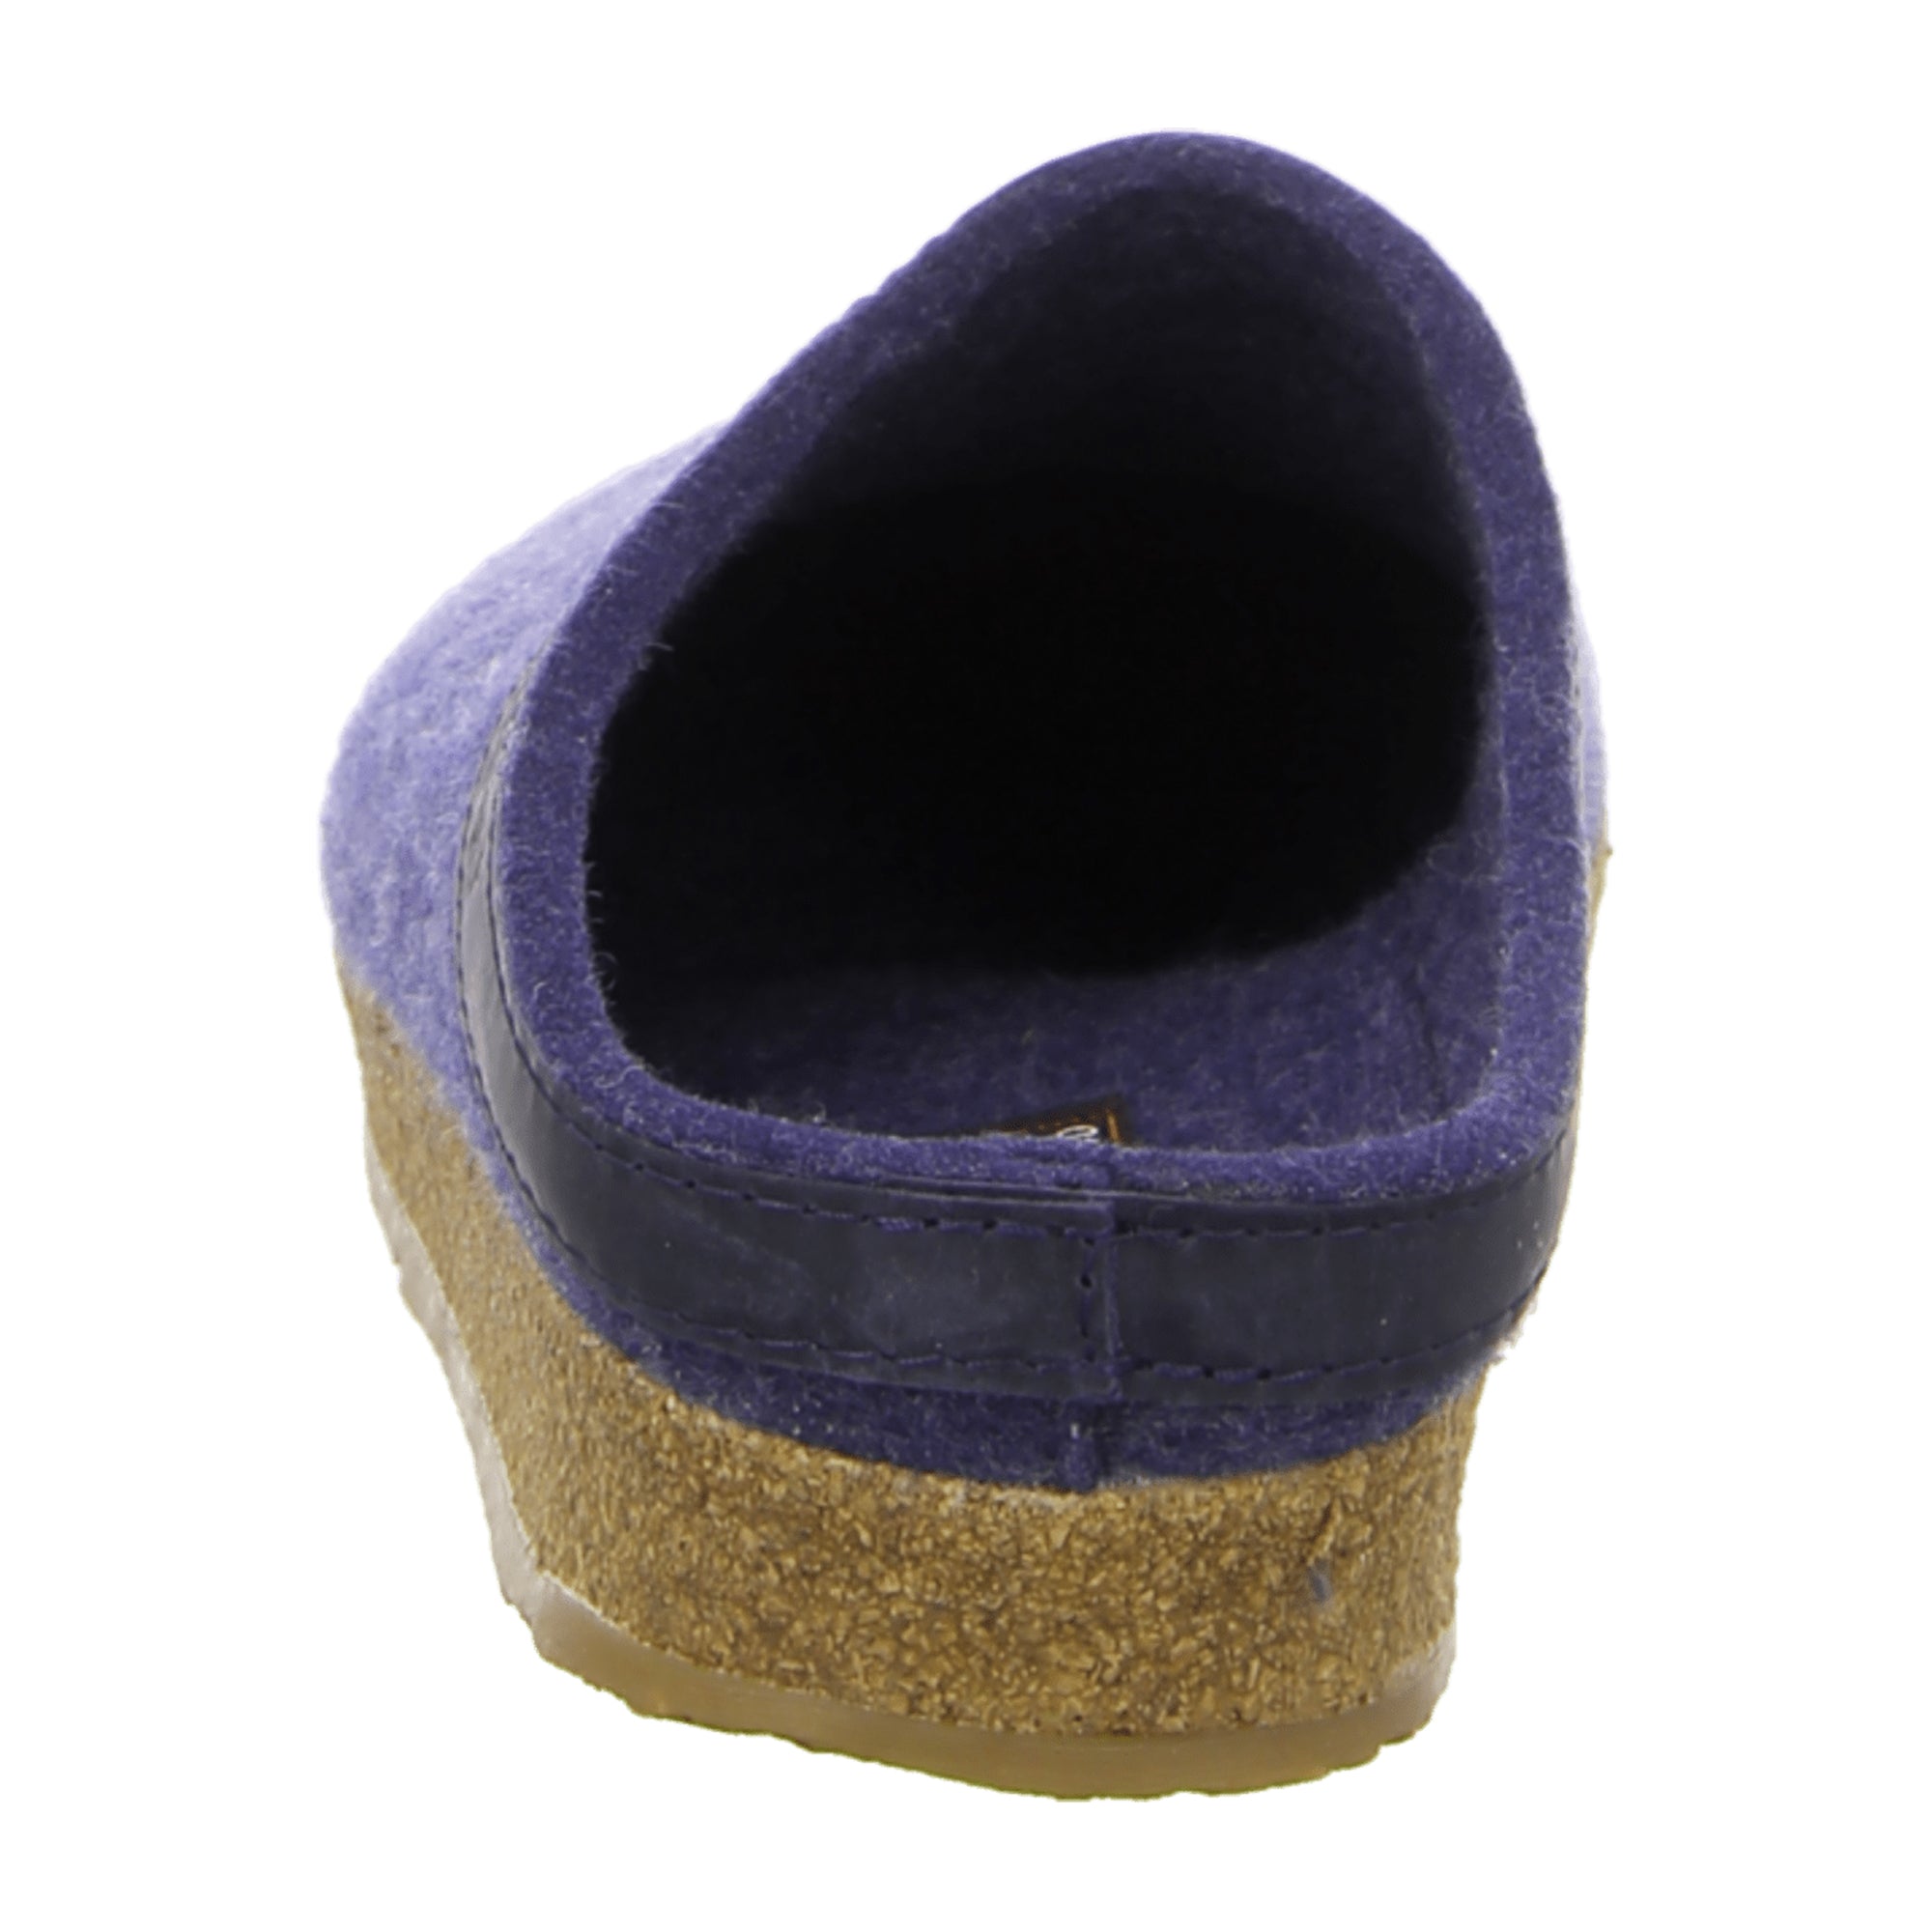 Haflinger Torben Men's Comfort Slippers, Stylish Blue